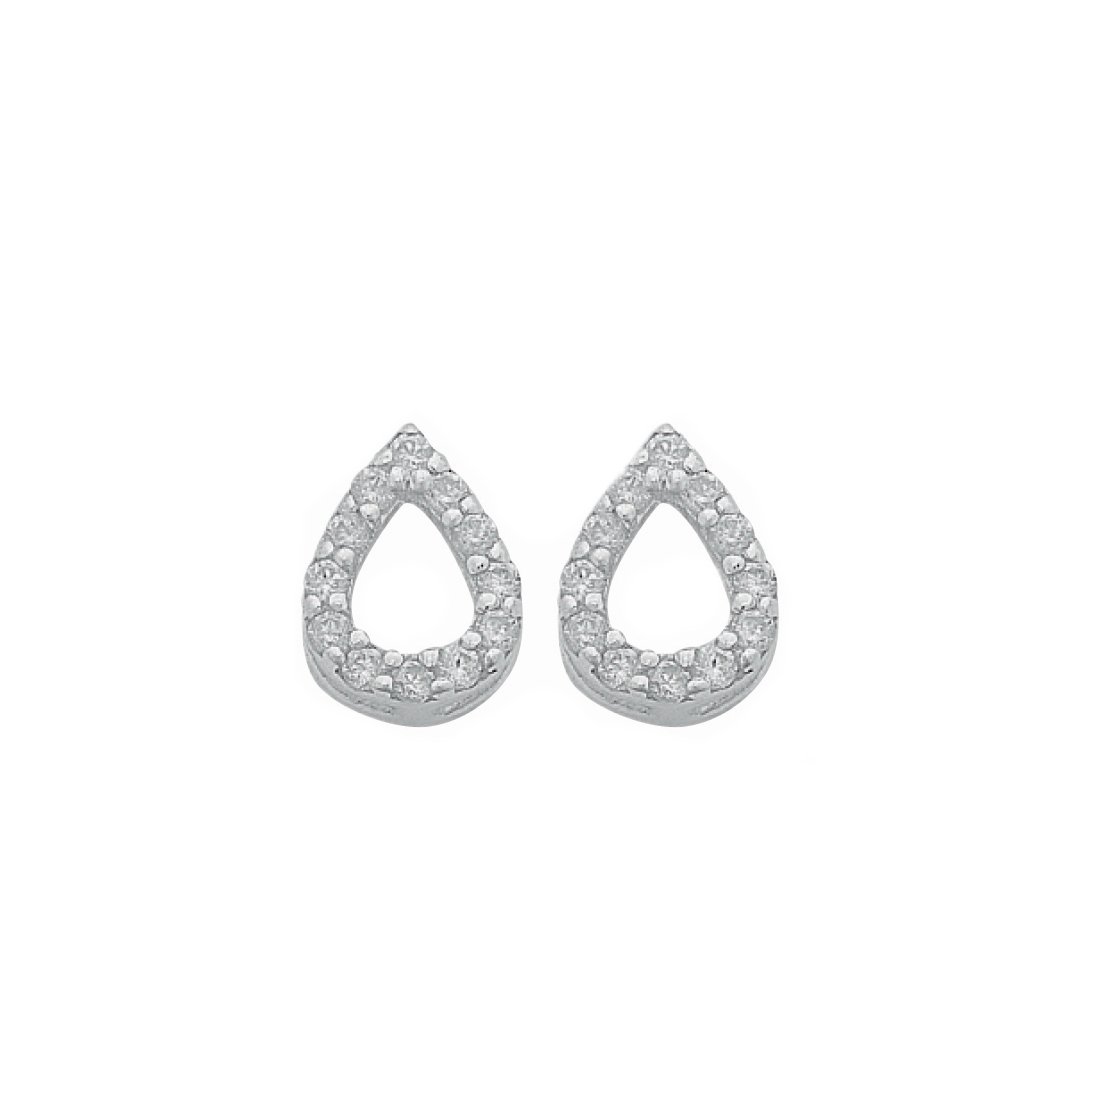 Sterling Silver and Cubic Zirconia Open Pear Stud Earrings Earrings Bevilles 